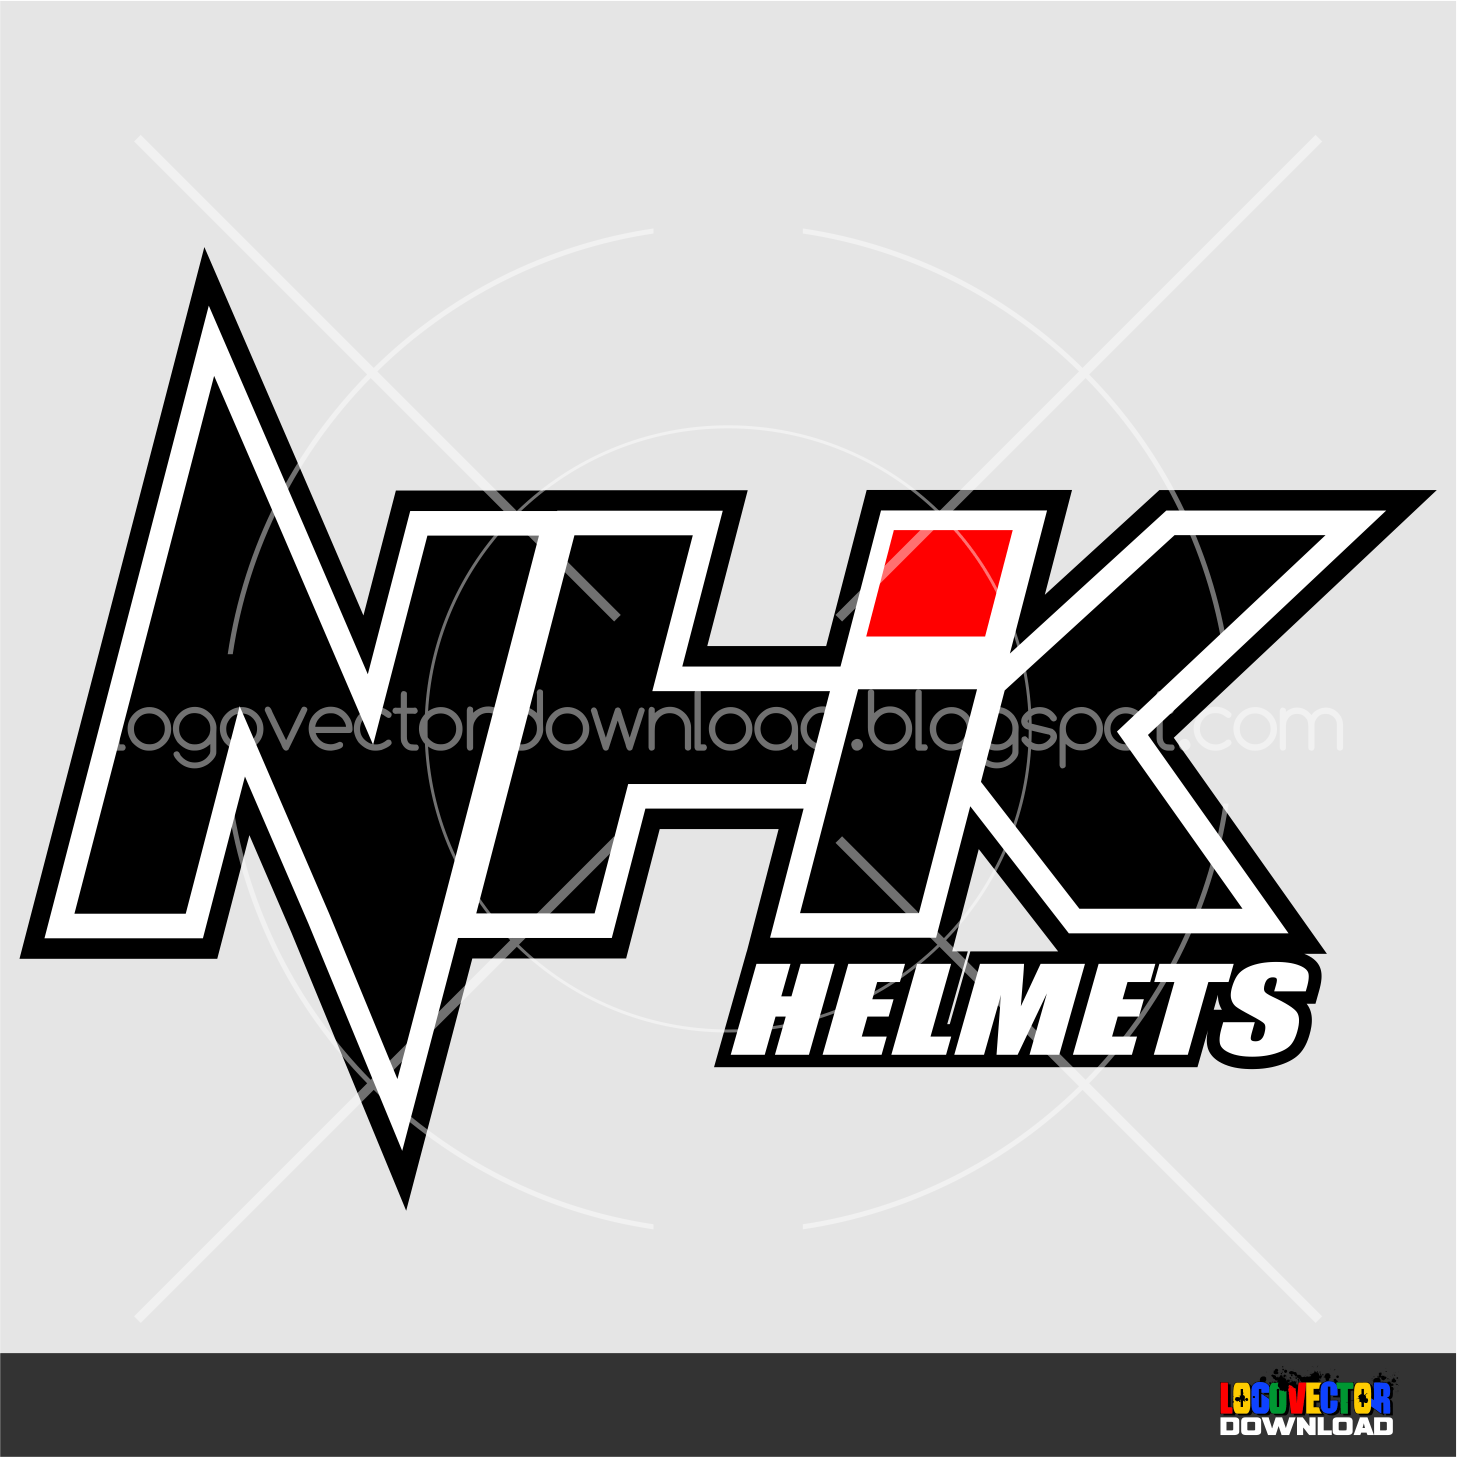 NHK Logo - NHK Helmet Logo Vector Cdr - Logo Vector Download